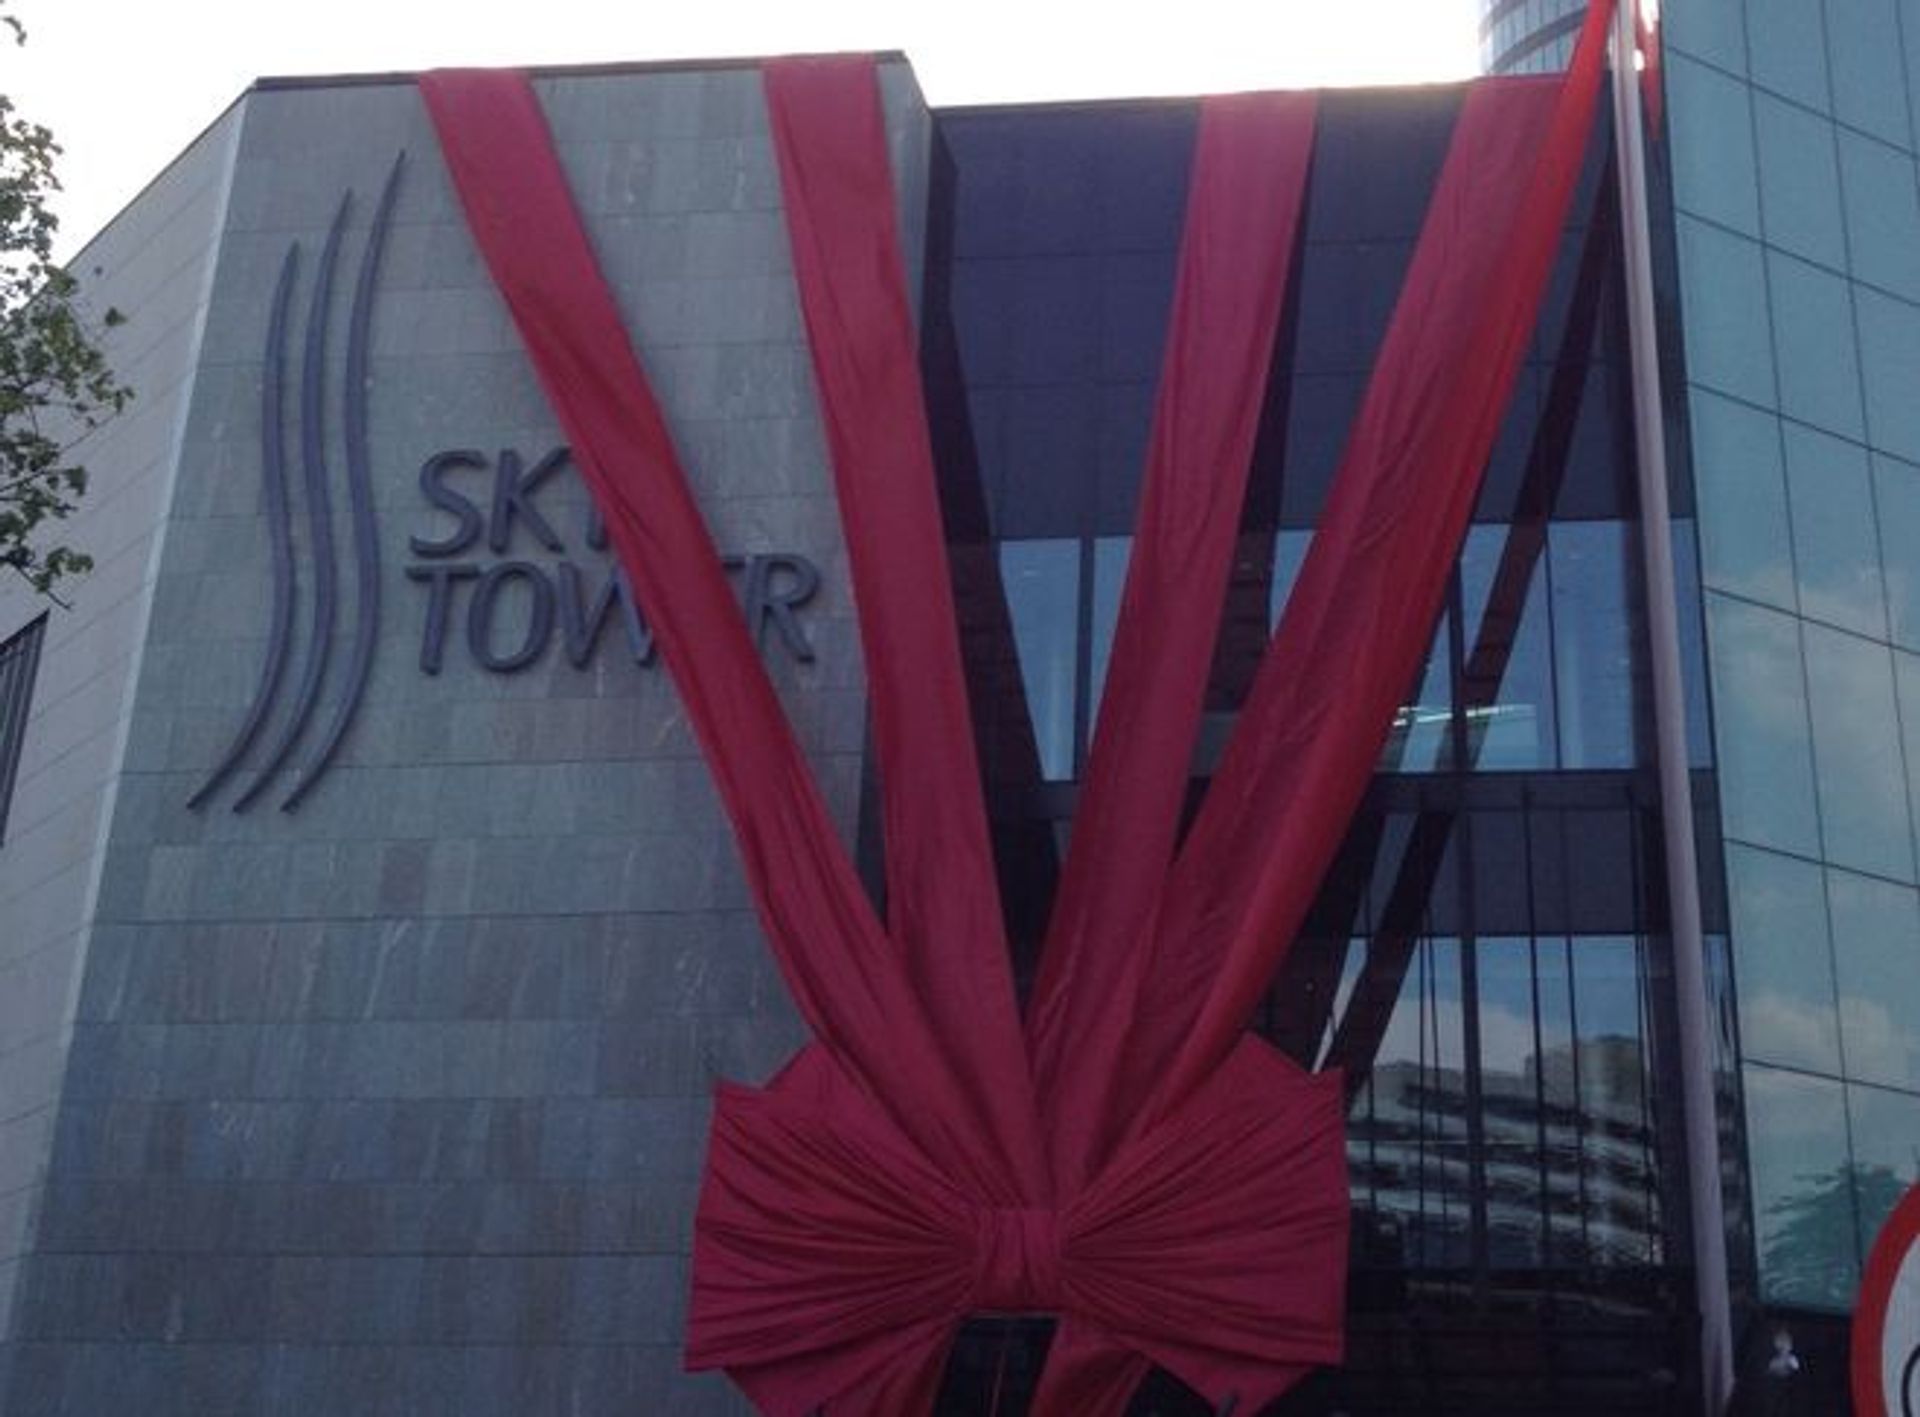  Oficjalna inauguracja Sky Tower we Wrocławiu (VIDEO)